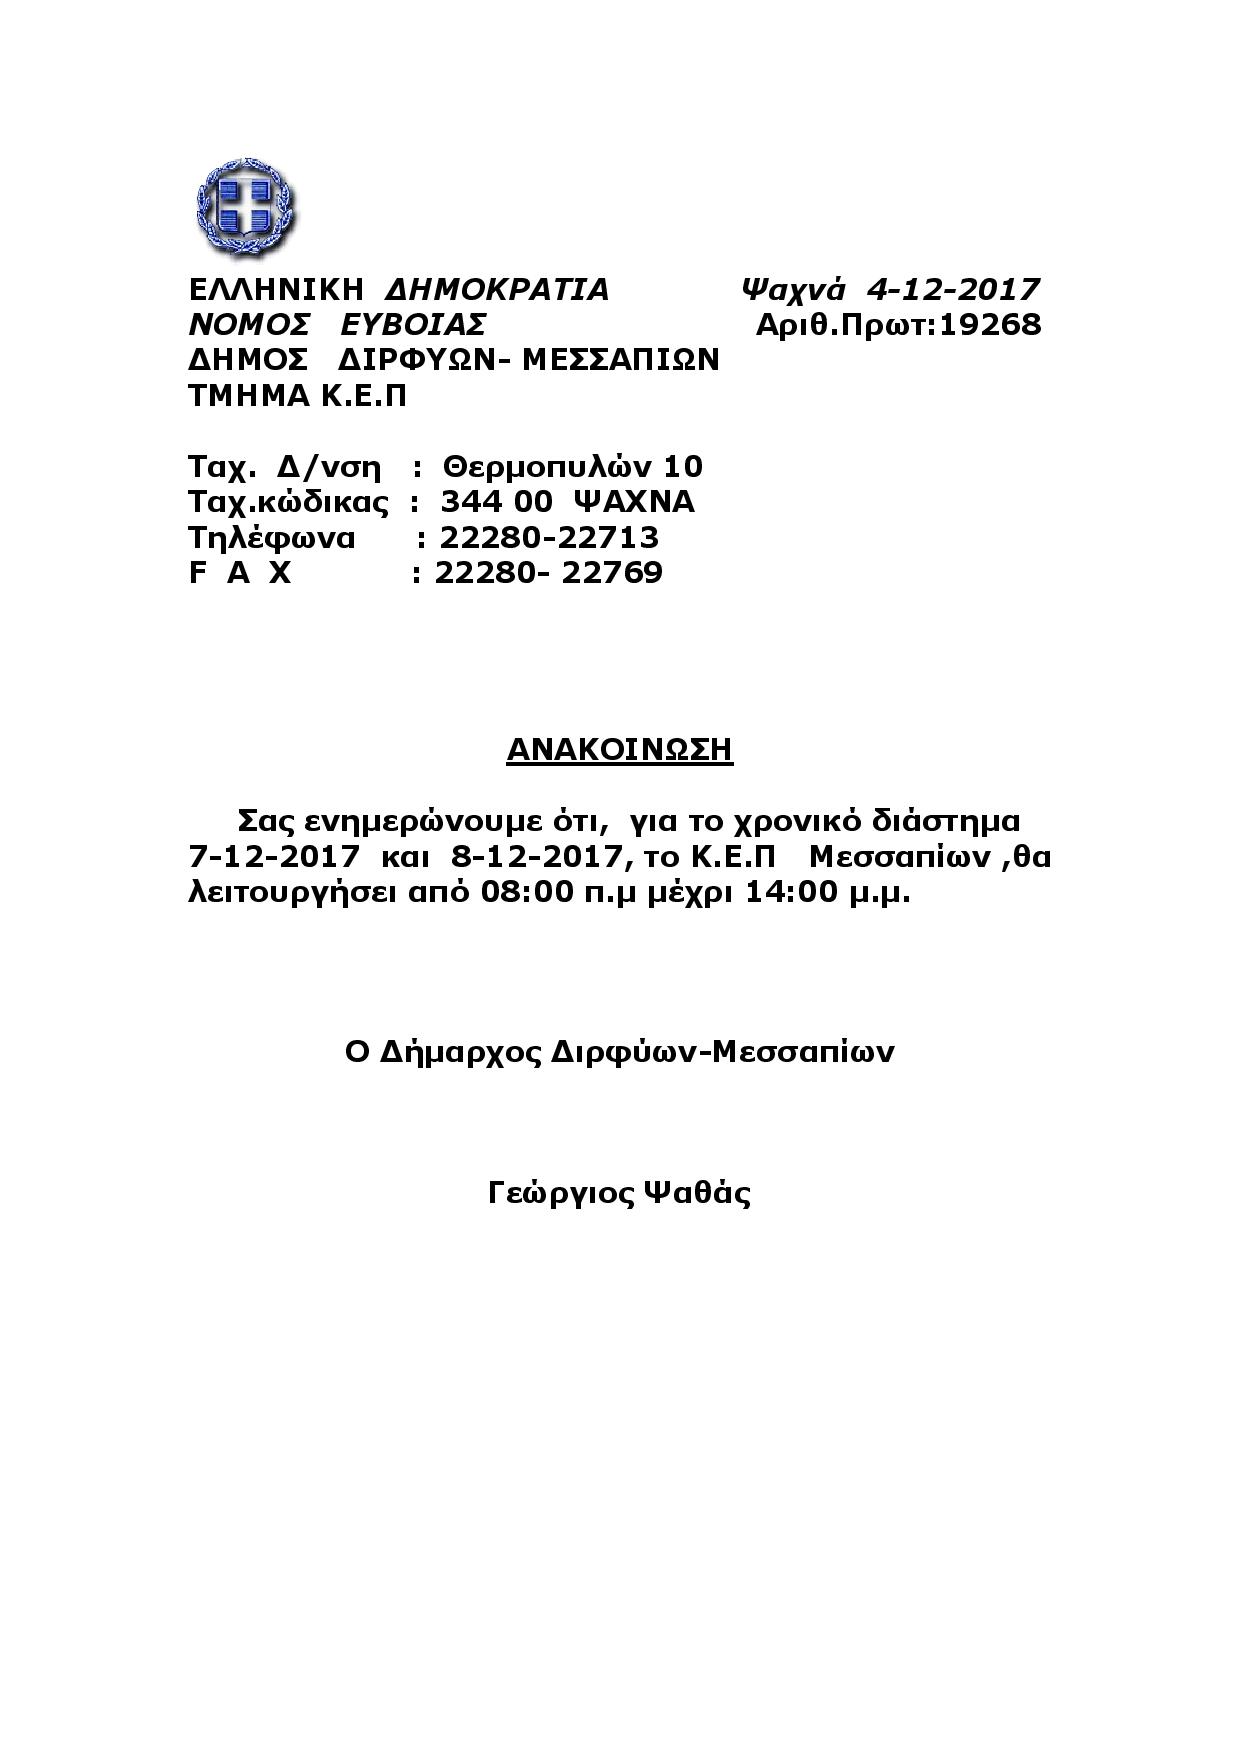 Ανακοίνωση λειτουργίας Κ.Ε.Π. Μεσσαπίων από 7/12/17 εώς 8/12/17 Document page 001